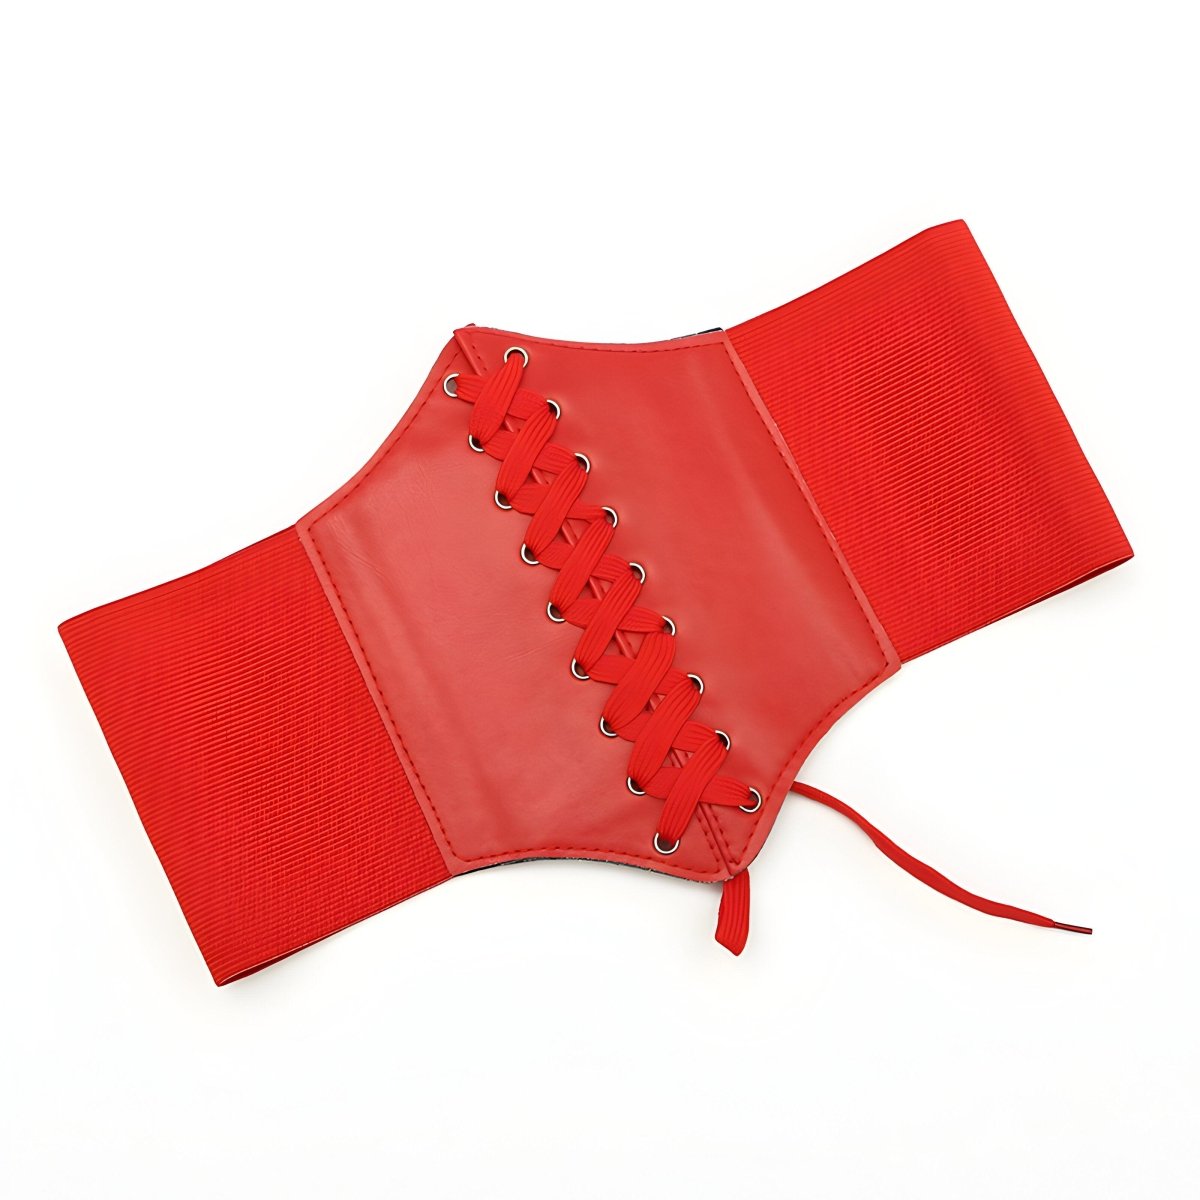 Ceinture corset unie à lacet, modèle Kayla - La Boutique de la Ceinture